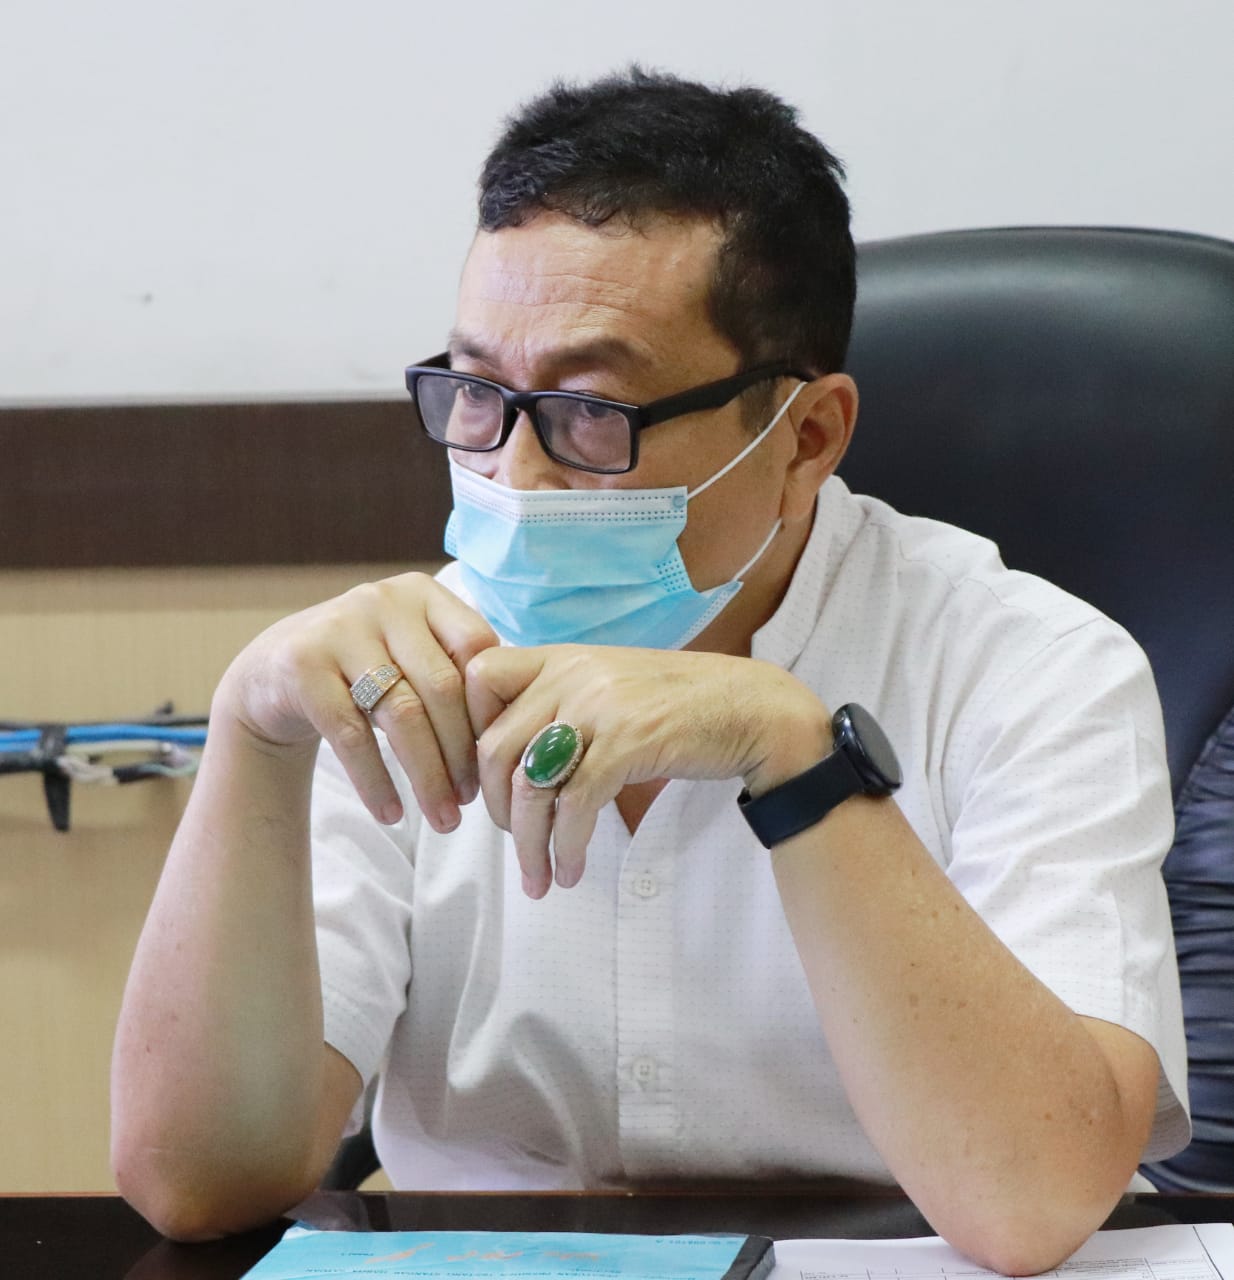 UPDATE ZONASI Kabupaten Kota di Sumatera Barat Minggu ke 49 Pandemi Covid-19 (Periode 14 Februari 2021 - 20 Februari 2021)